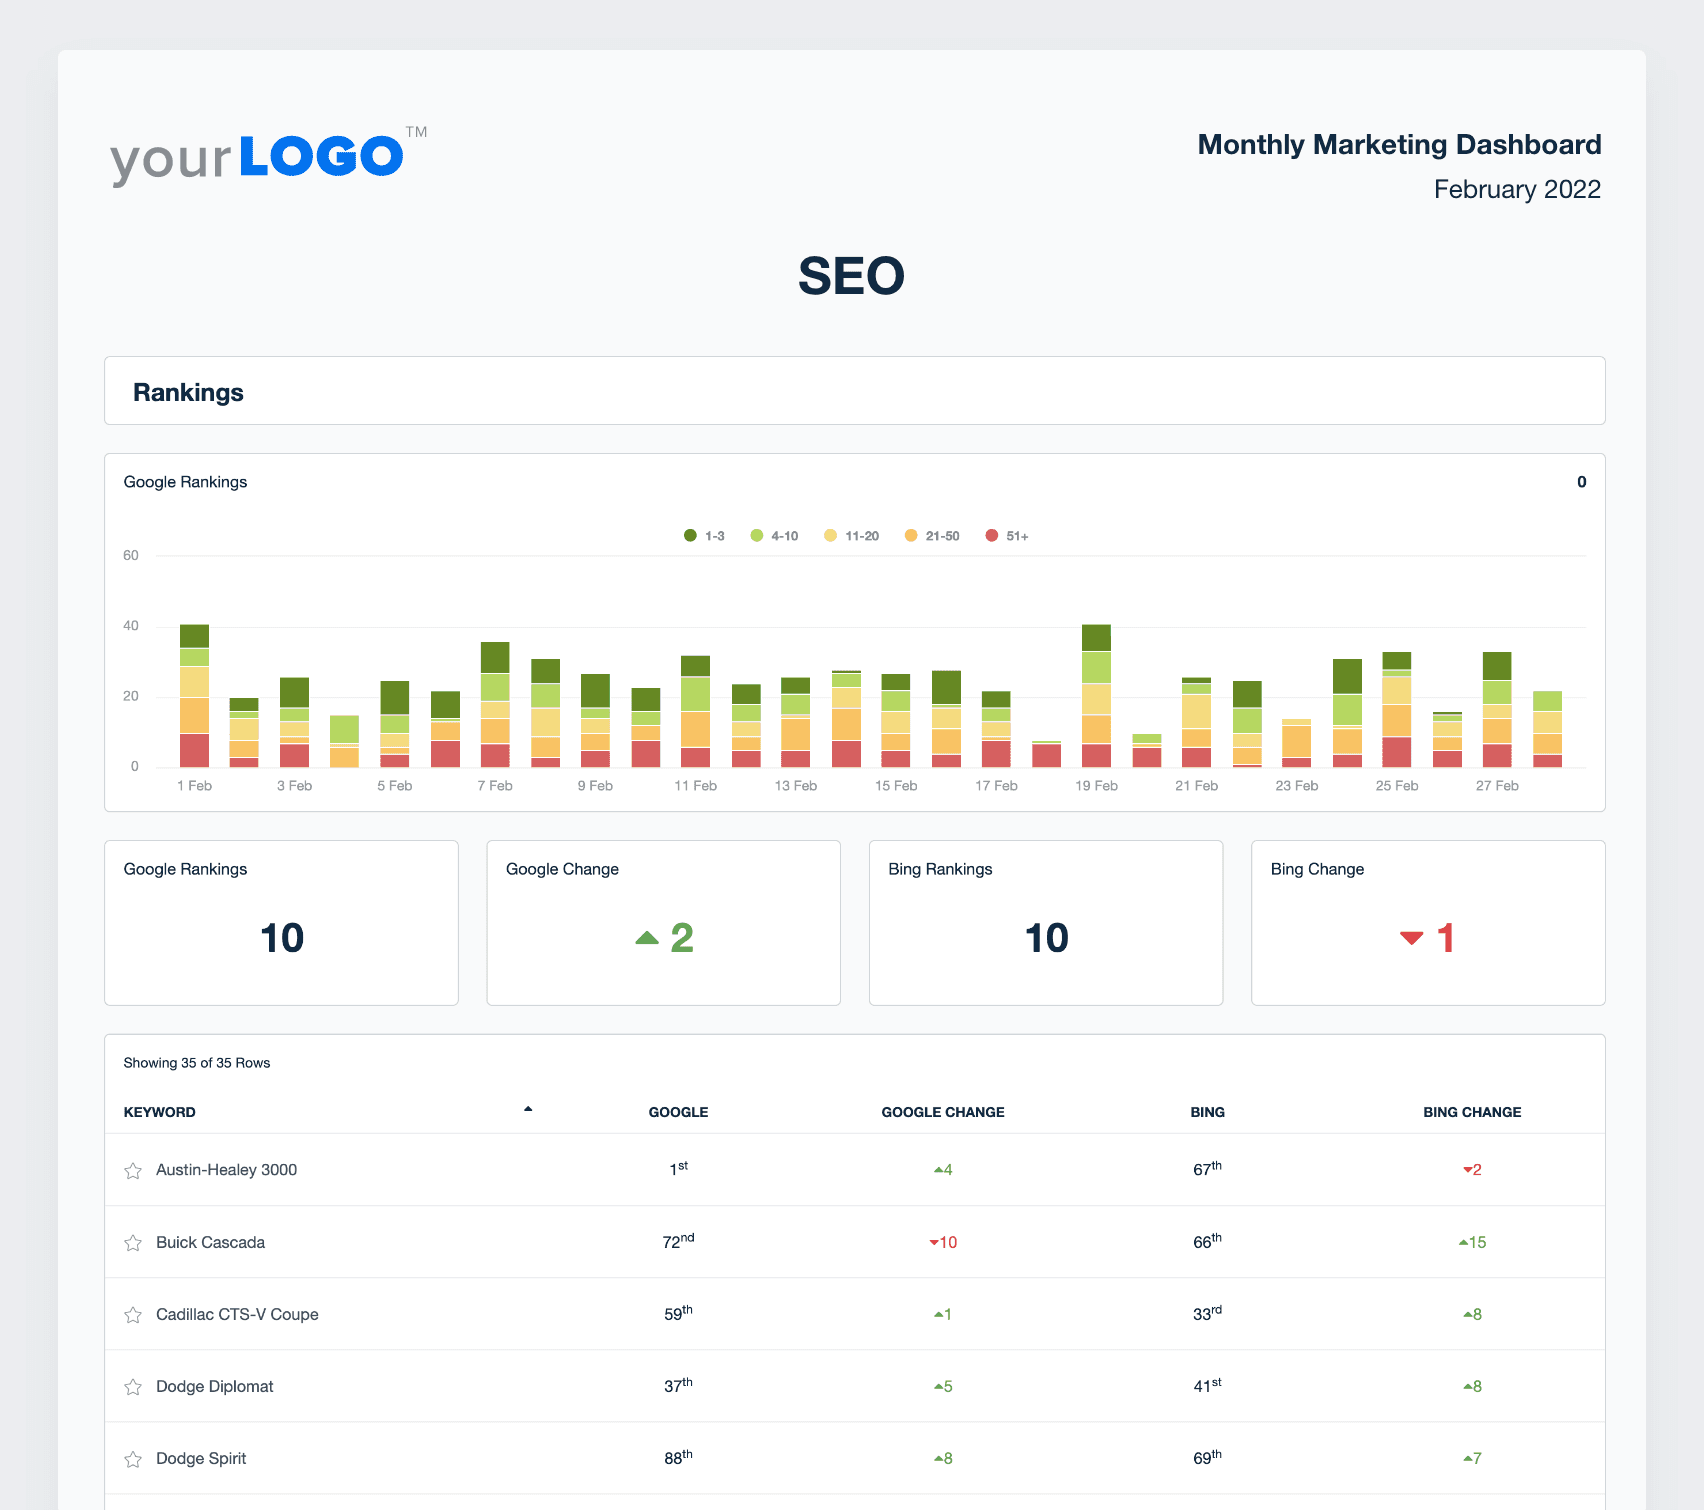 A screenshot of SEO data in a marketing report template